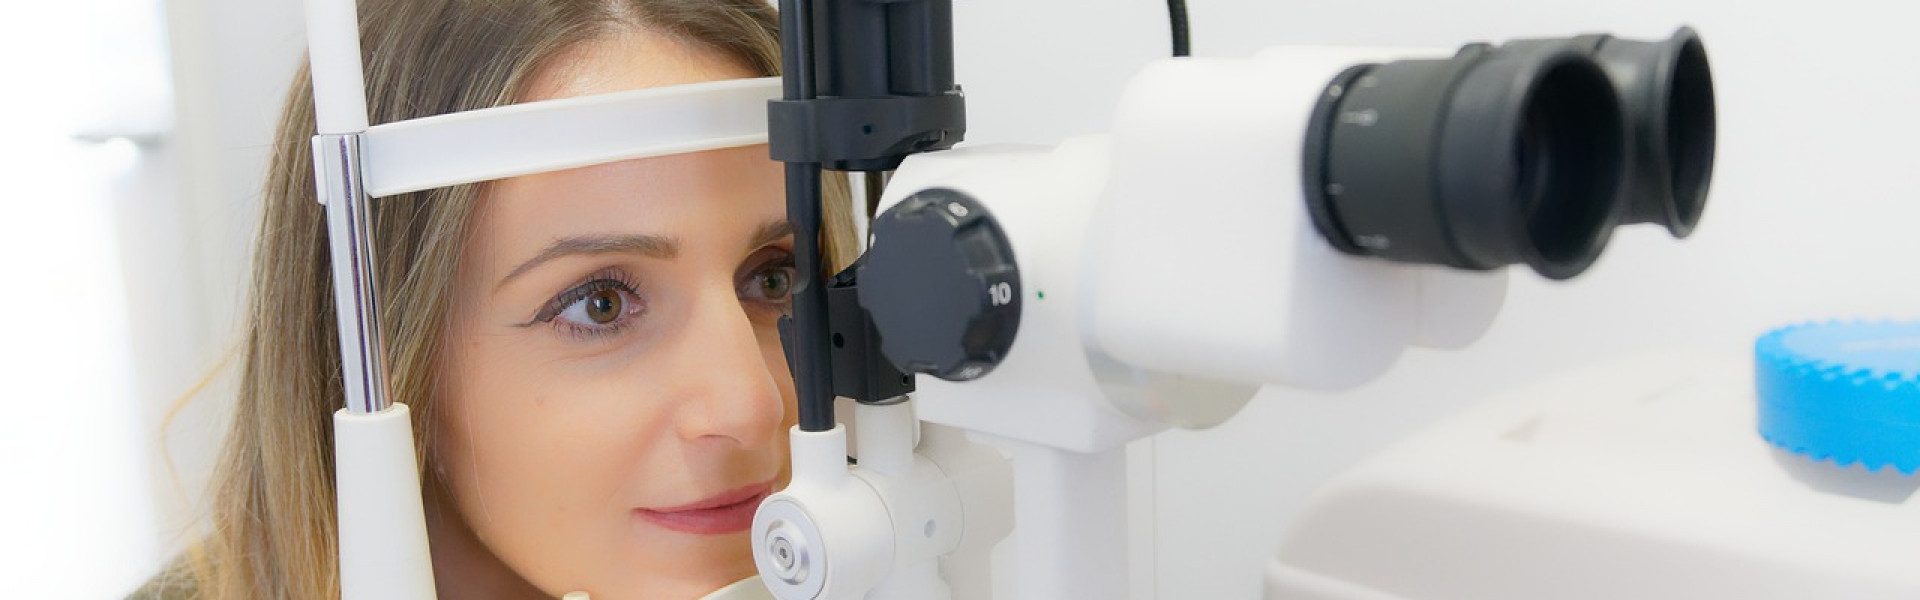 Examen OCT : la technique avantageuse en imagerie médicale de l'œil...